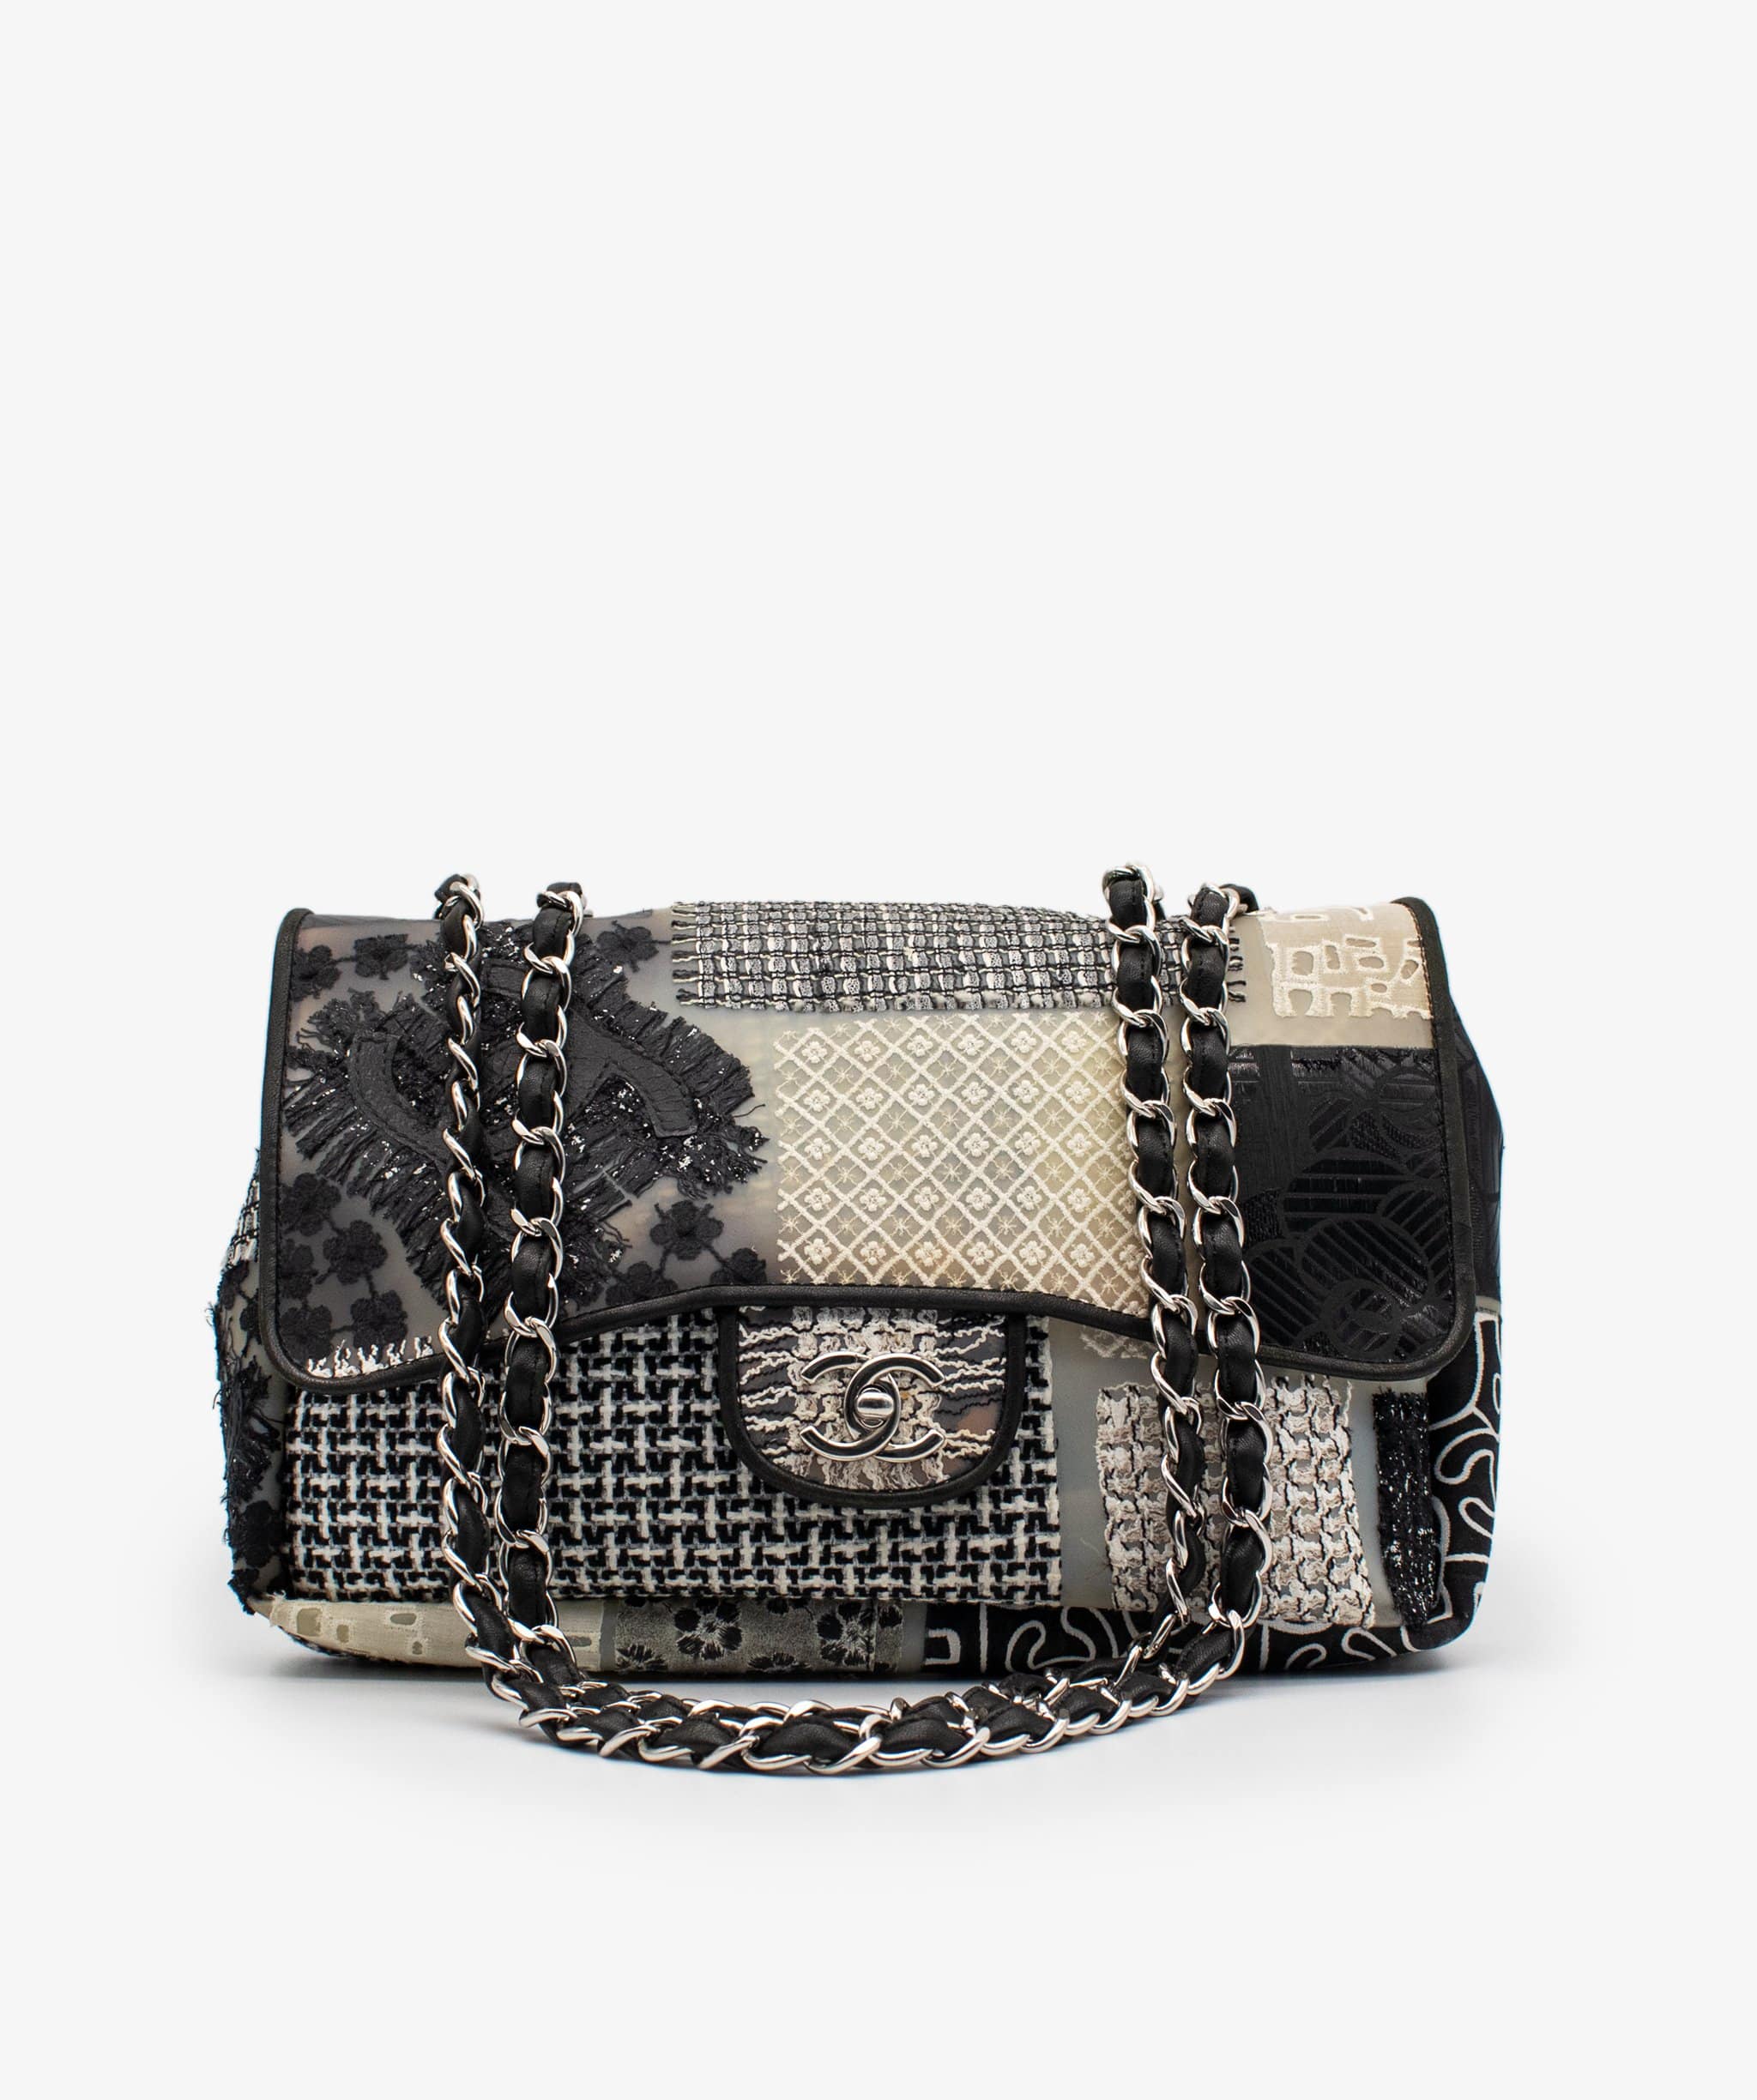 Chanel Chanel Jumbo Patchwork Flap Bag